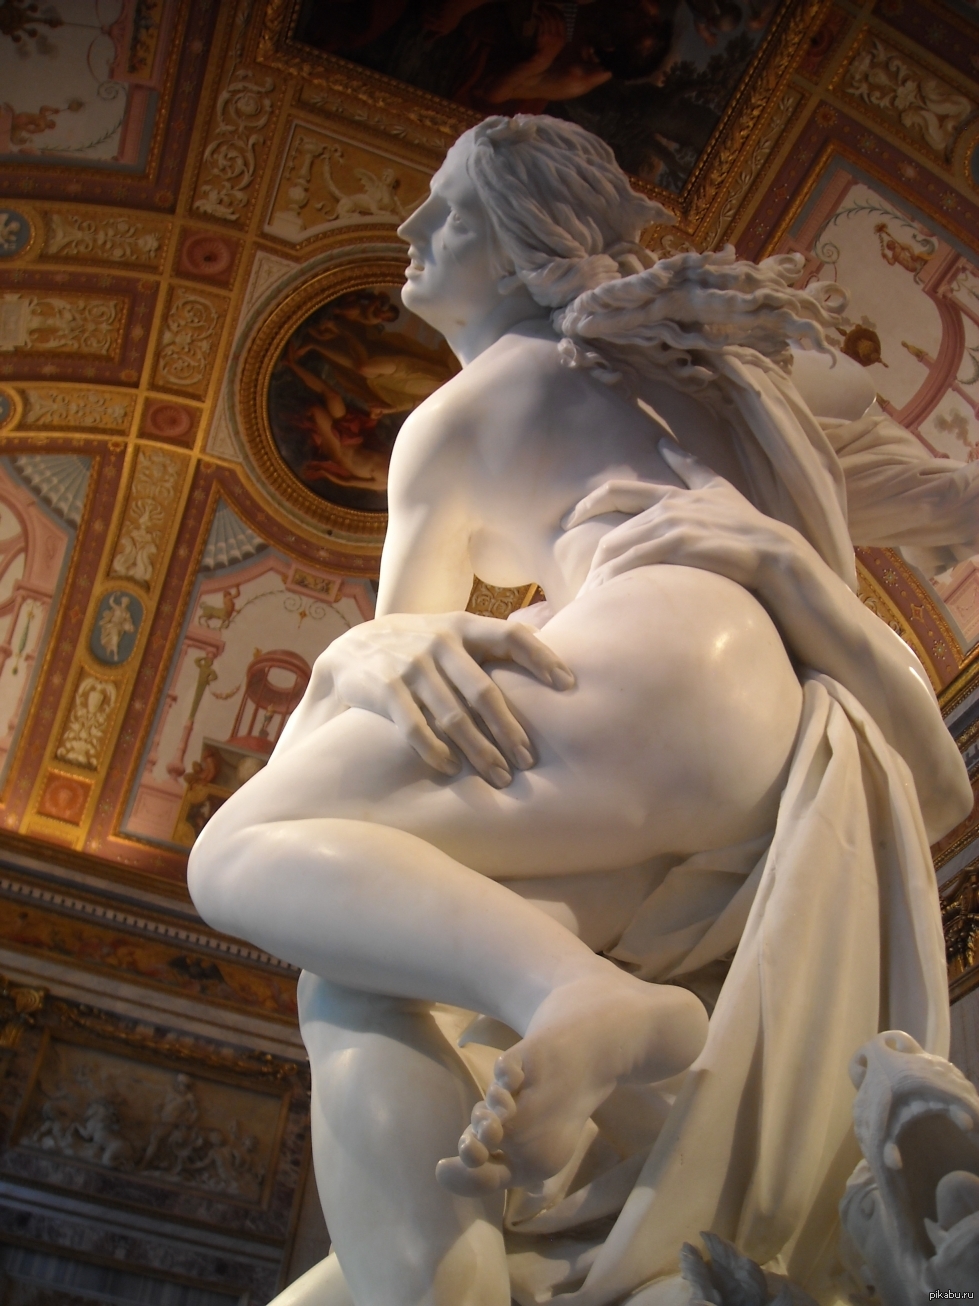 Чувственное произведение. Джованни Лоренцо Бернини скульптуры. 2. Похищение Прозерпины-1621/1622 — галерея Боргезе, Рим. Похищение Прозерпины скульптура. "Похищение Прозерпины" (1622), мрамор, скульптор Джованни Бернини.